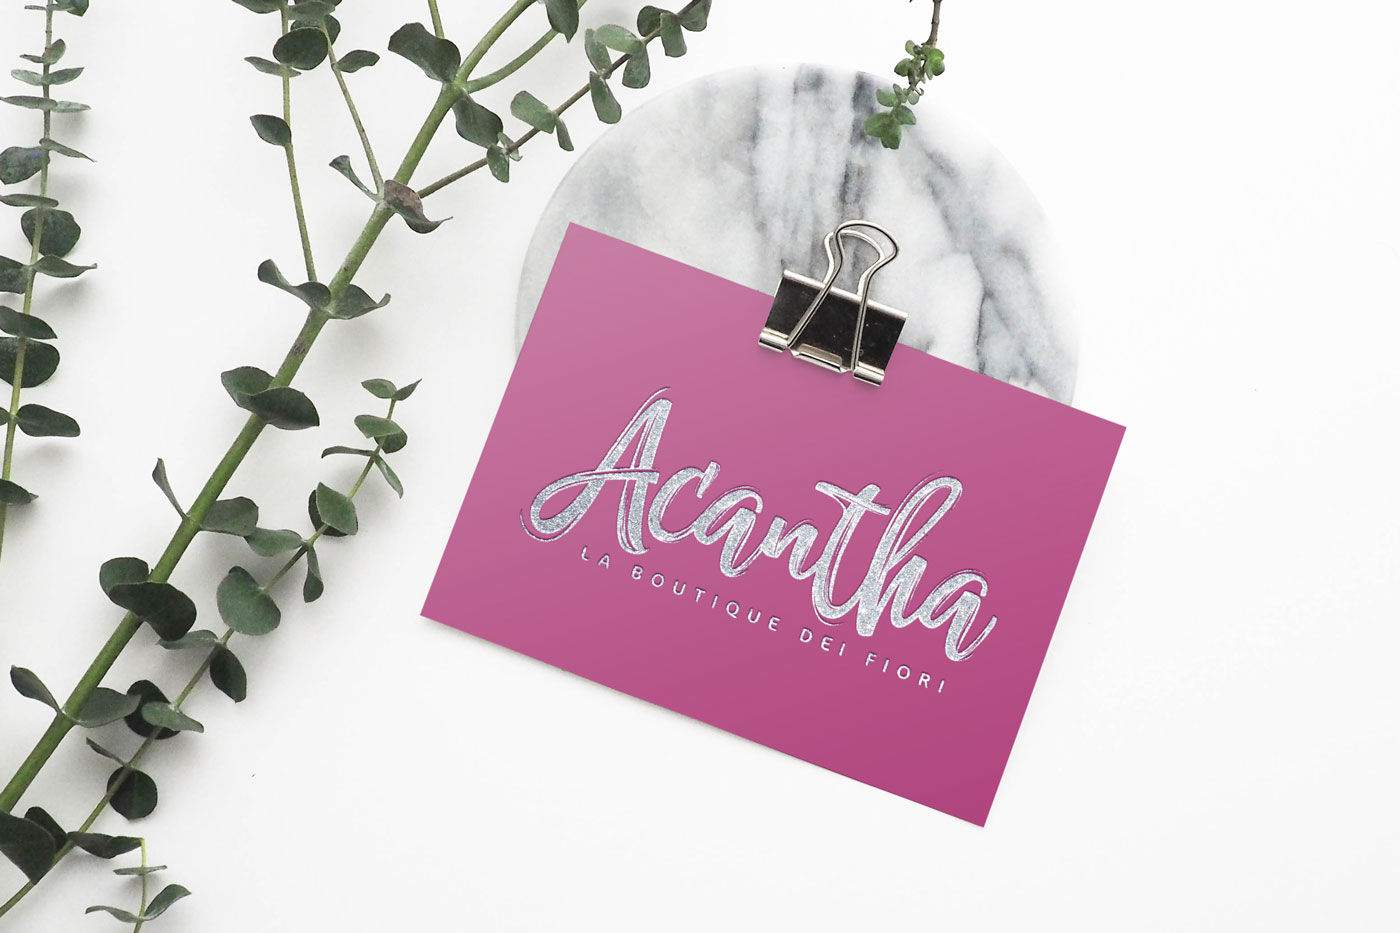 Acantha, la boutique dei fiori - logo